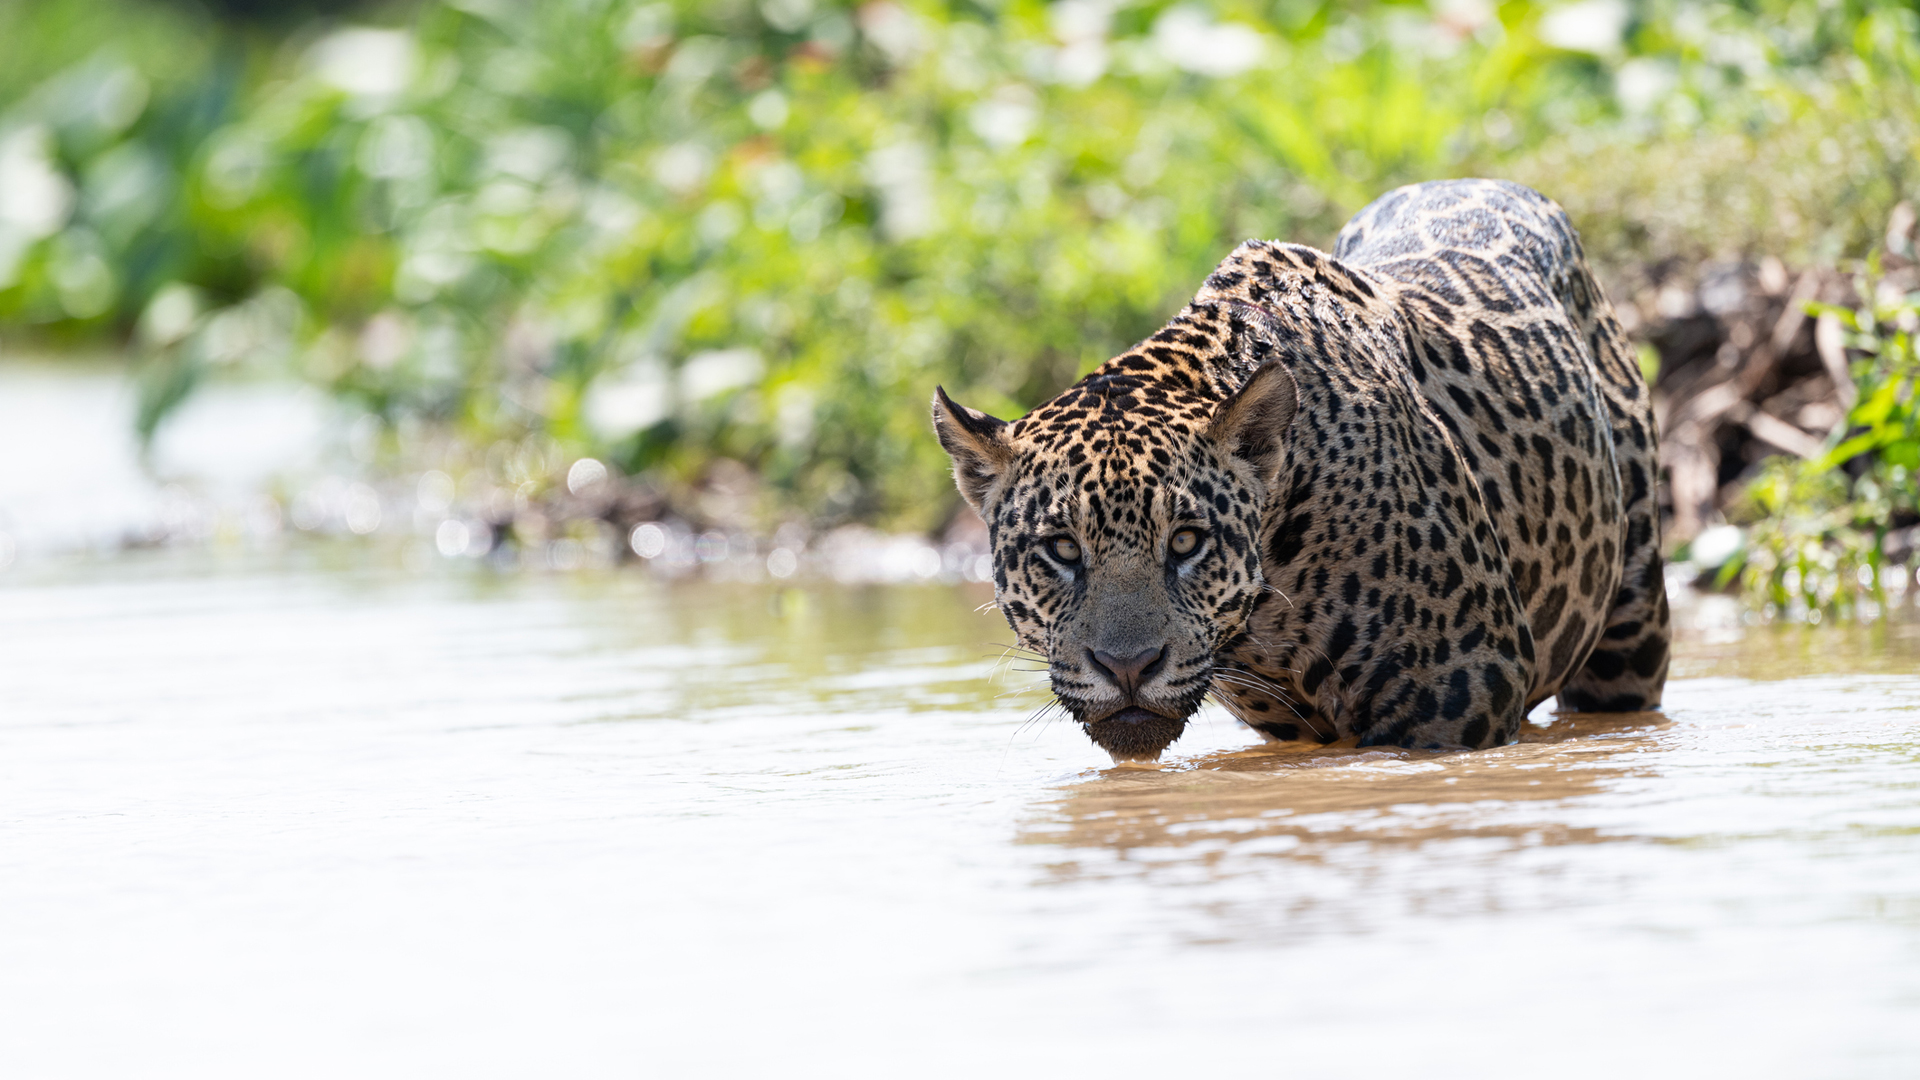 Somos documentales - Jaguar contra cocodrilo - Documental en RTVE